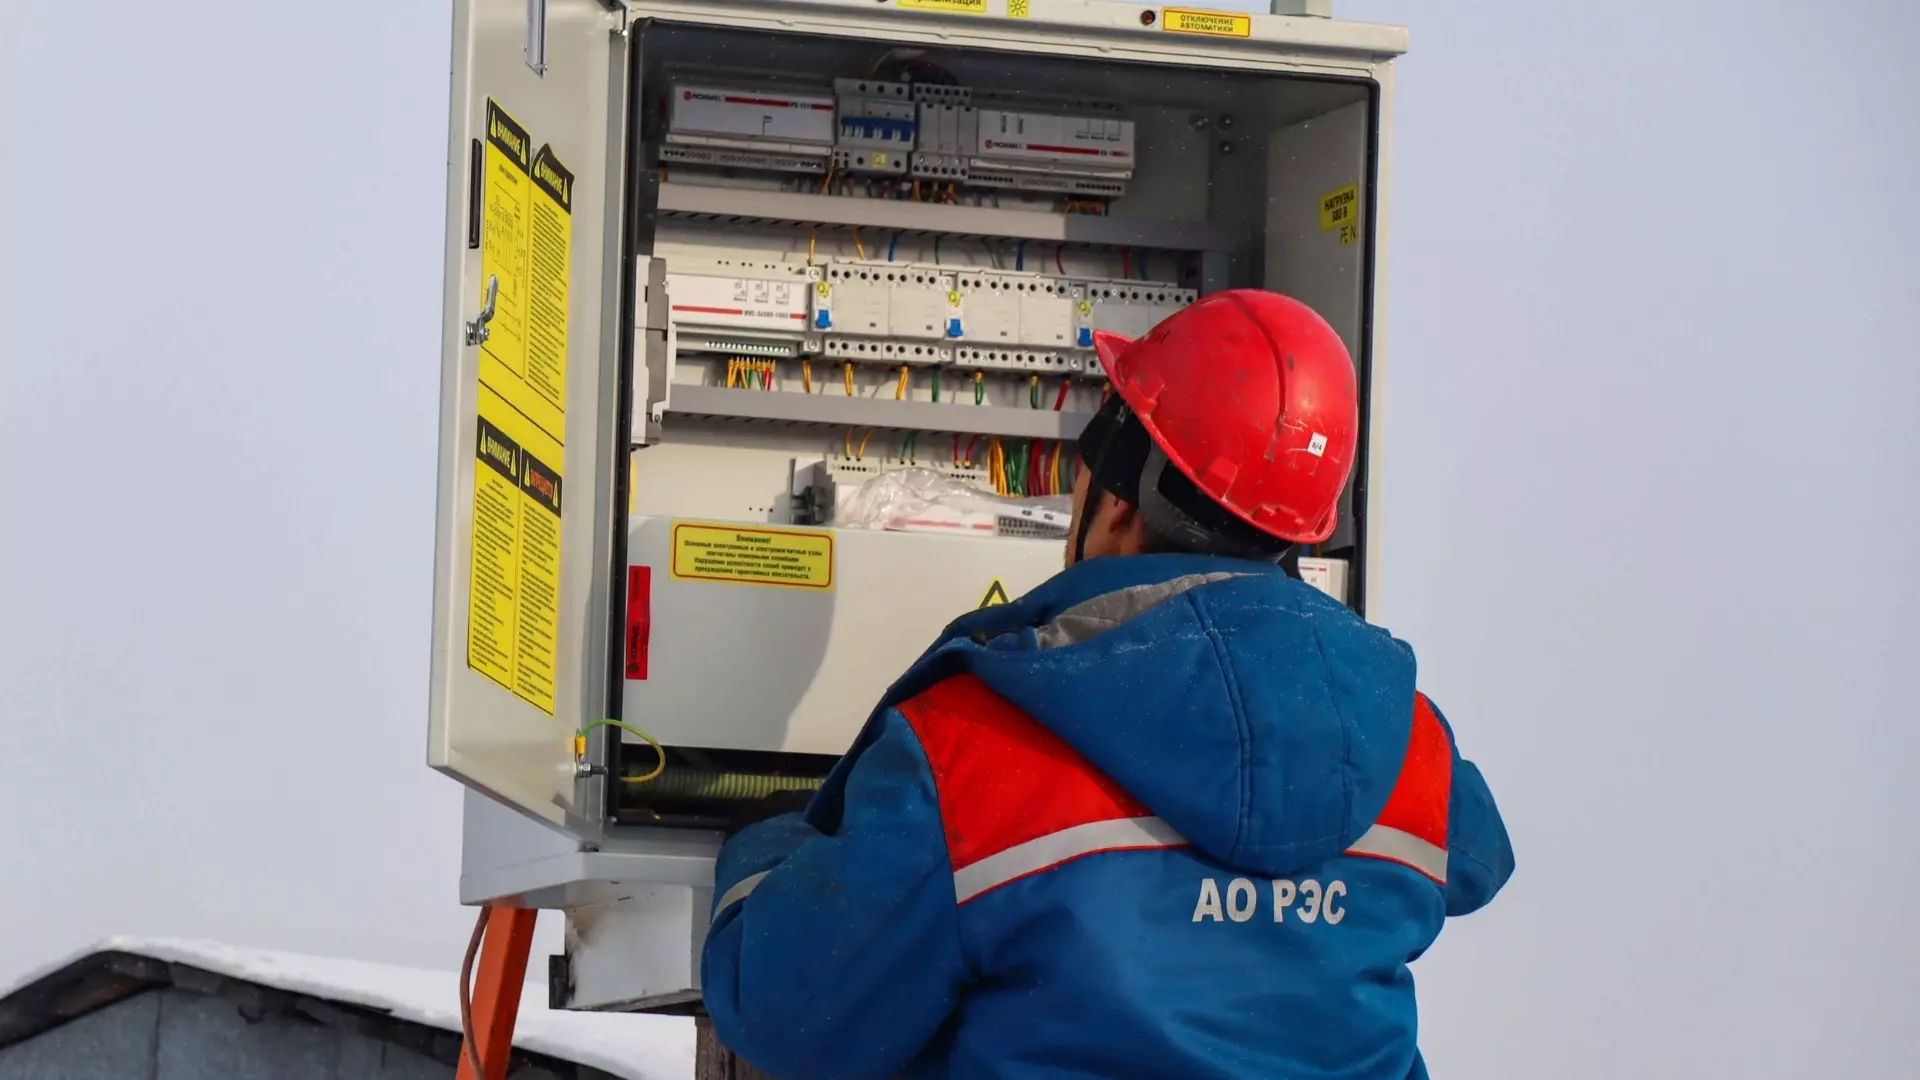 АО «РЭС» применяет нормализаторы напряжения в электросетях